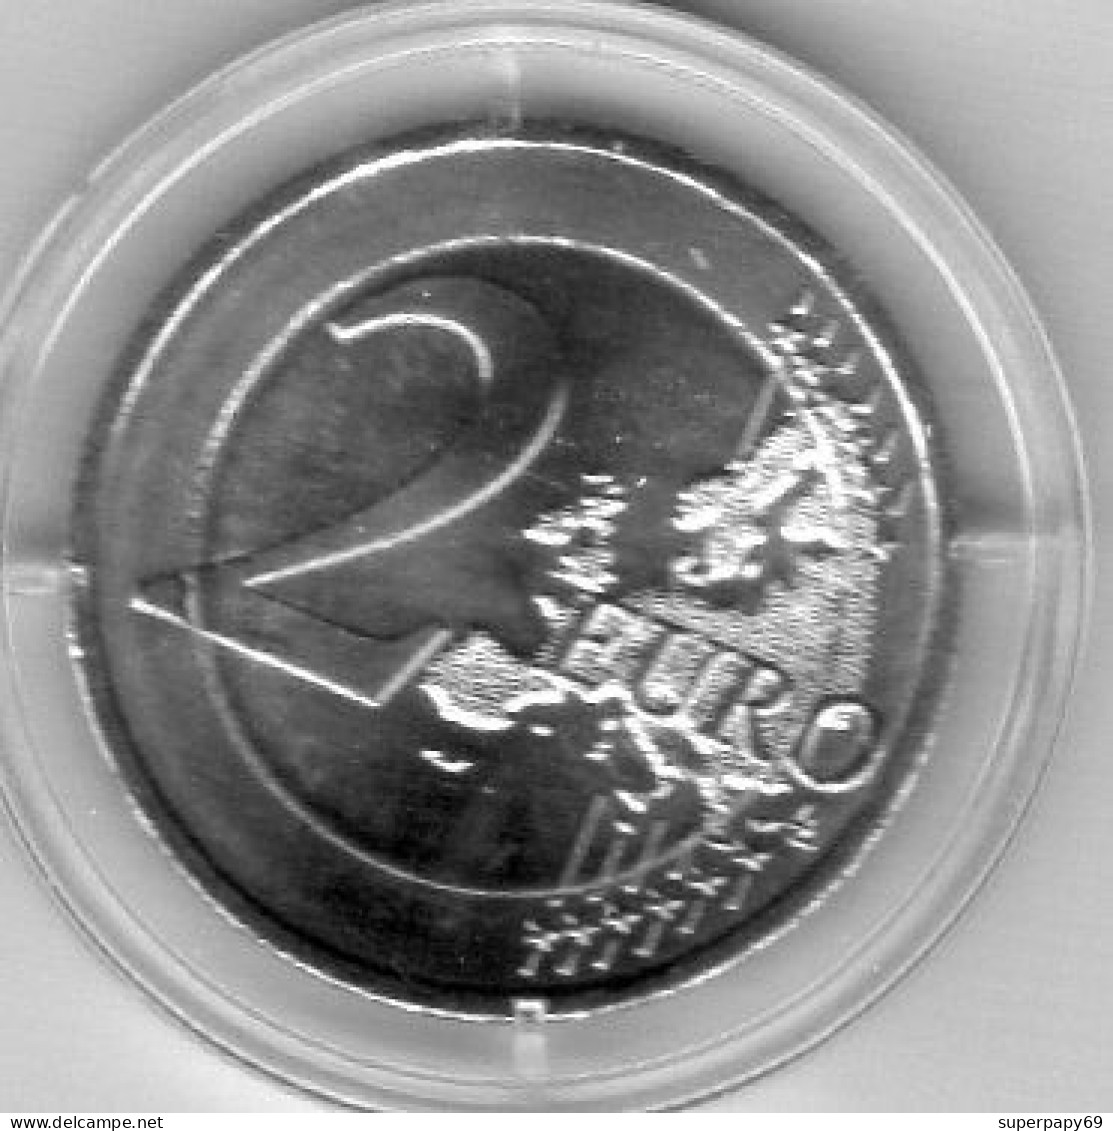 Grece  2,00€  2017  Commémoratif  FDC - Griechenland